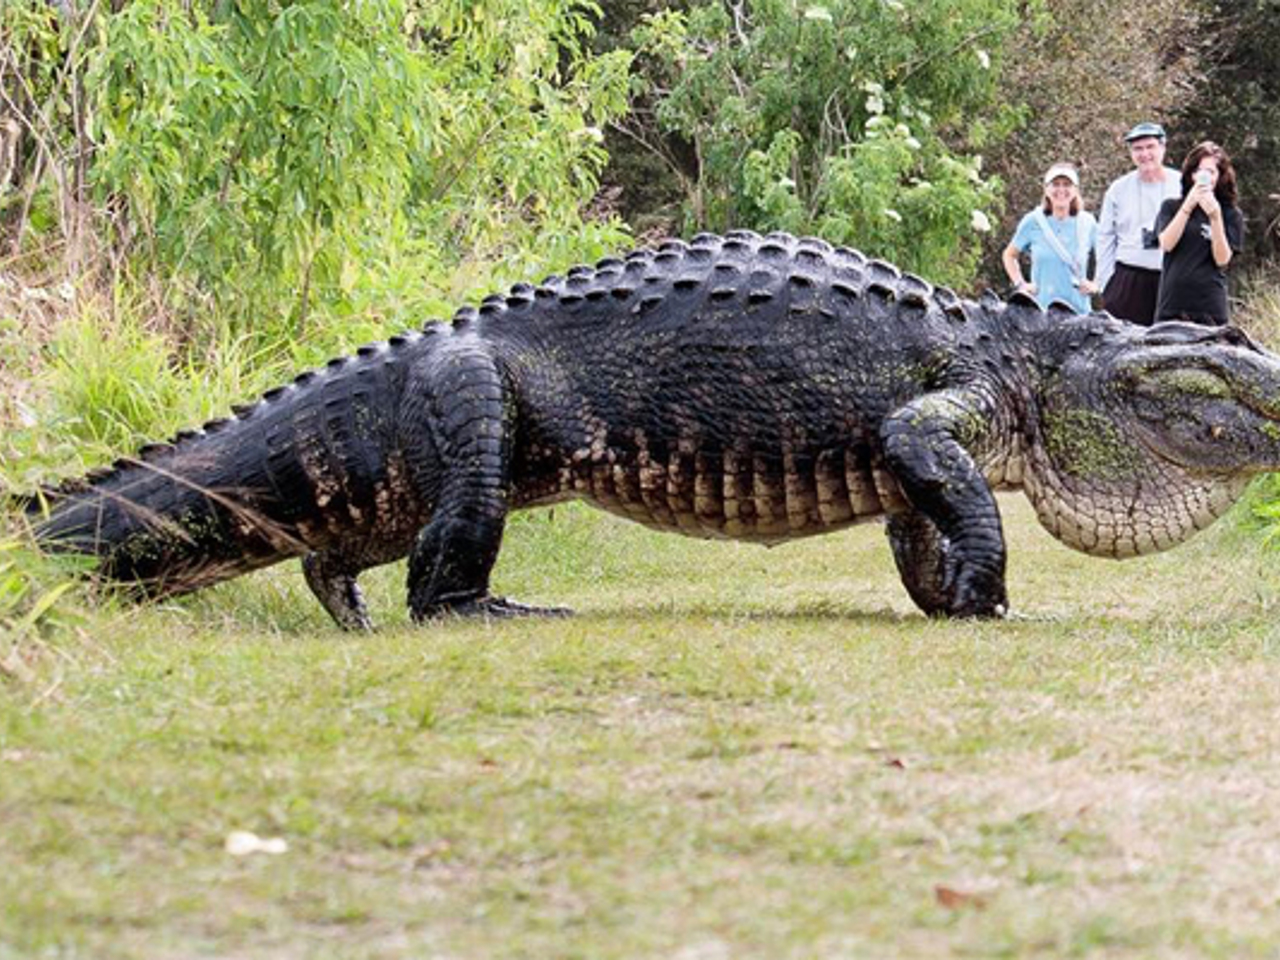 Рептилия из ада: как выглядит самый большой крокодил в мире - Рамблер/спорт